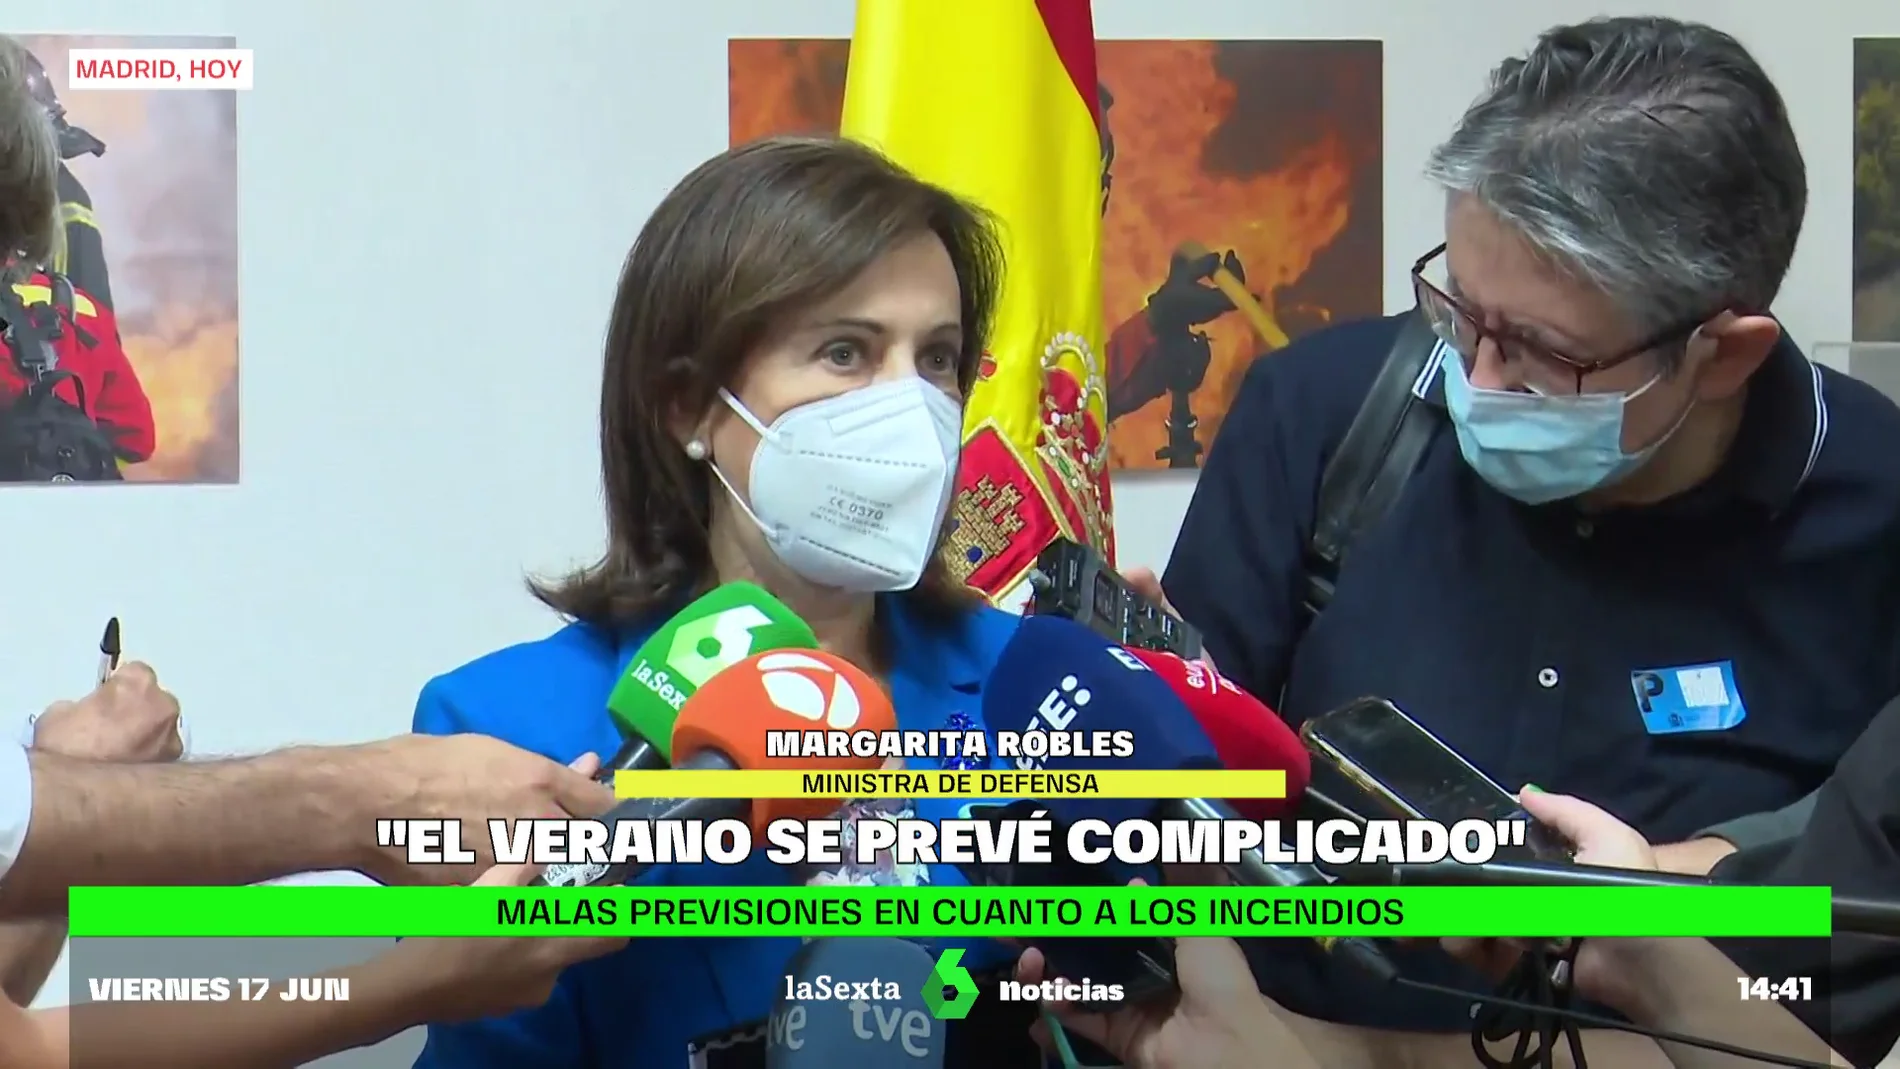 La ministra Robles avisa sobre los incendios: "El verano se prevé complicado"